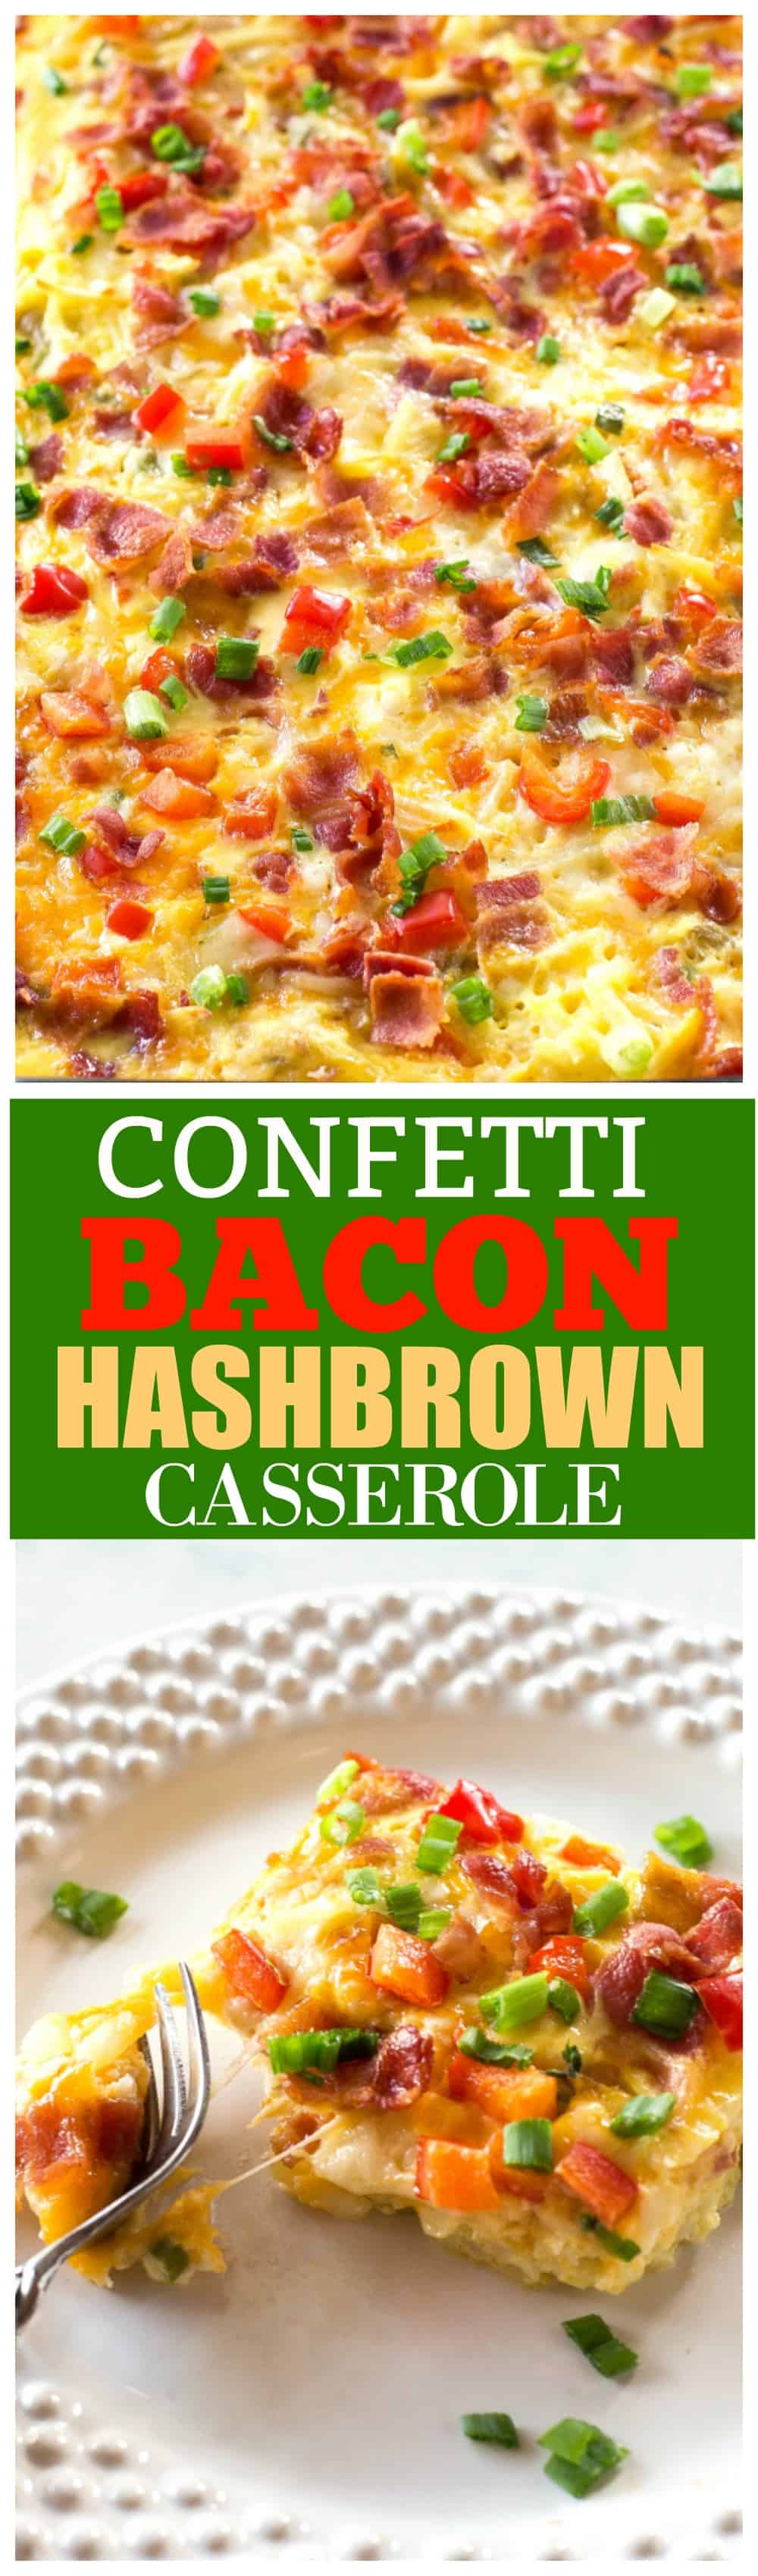 Confetti Bacon Hashbrown Casserole - um ótimo café da manhã para entreter recheado com queijo hash brown, ovos, pimenta, cebola verde e pimentão vermelho.  #bacon #hashbrown #hash #marrom #casserole #egg #receita #breakfast